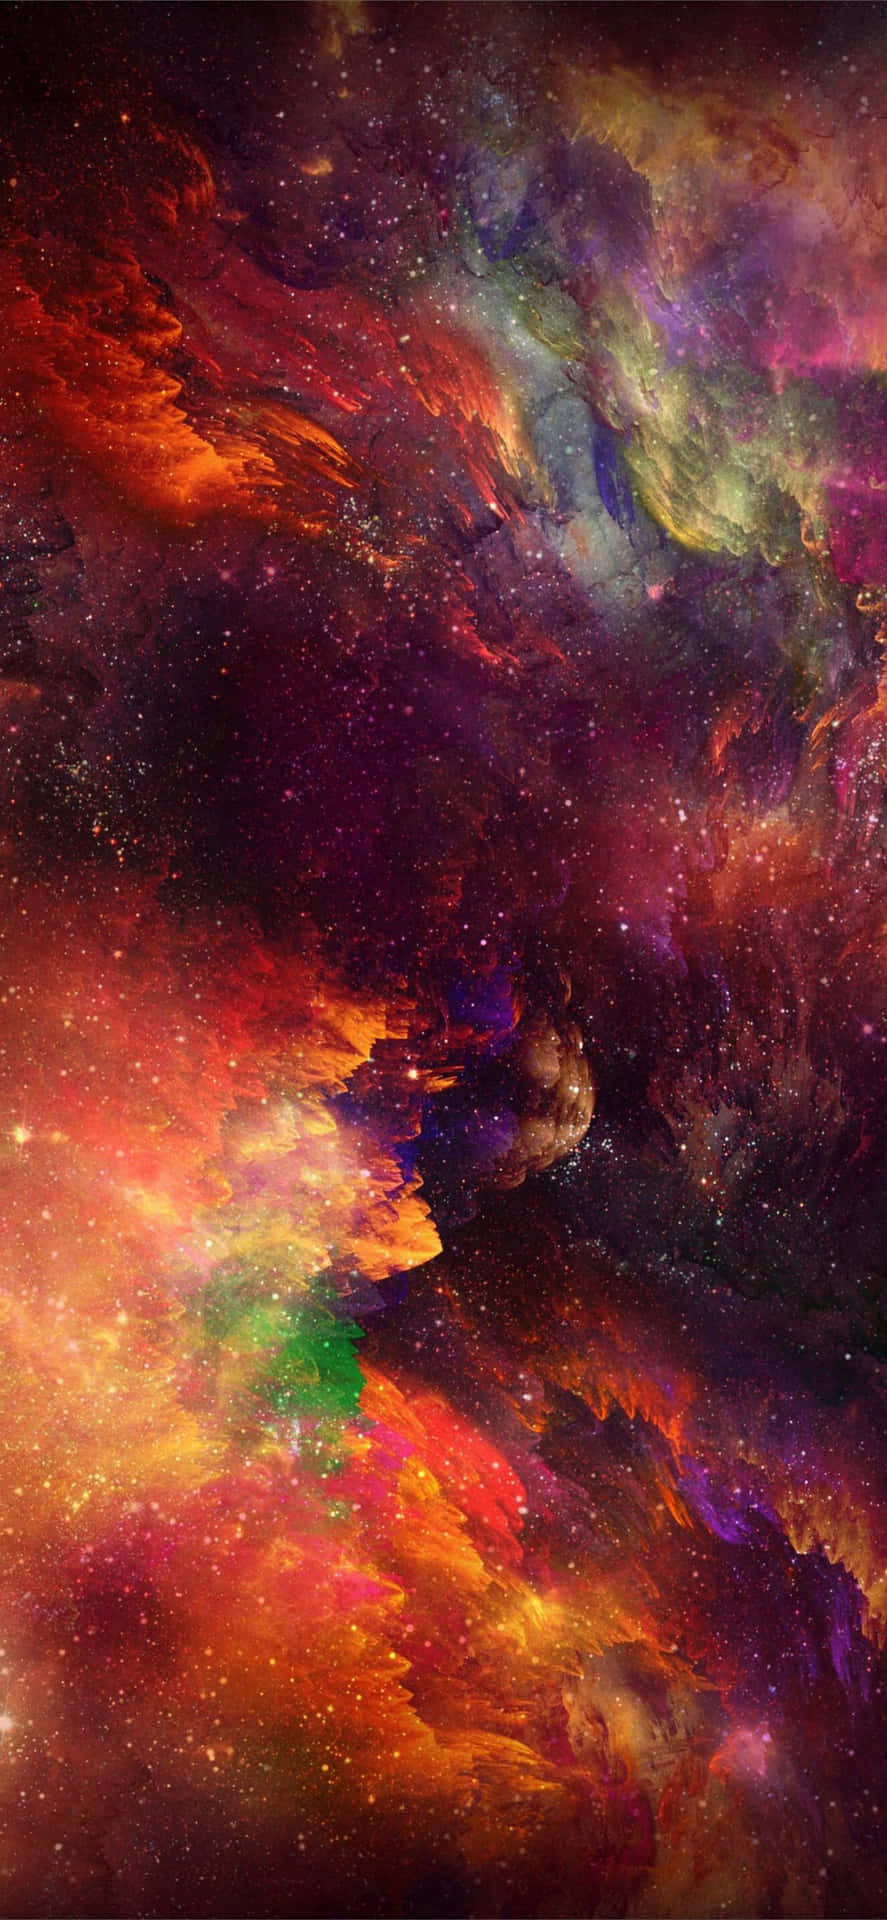 Bestaunedie Pracht Unseres Universums Mit Einem Iphone Xr. Wallpaper